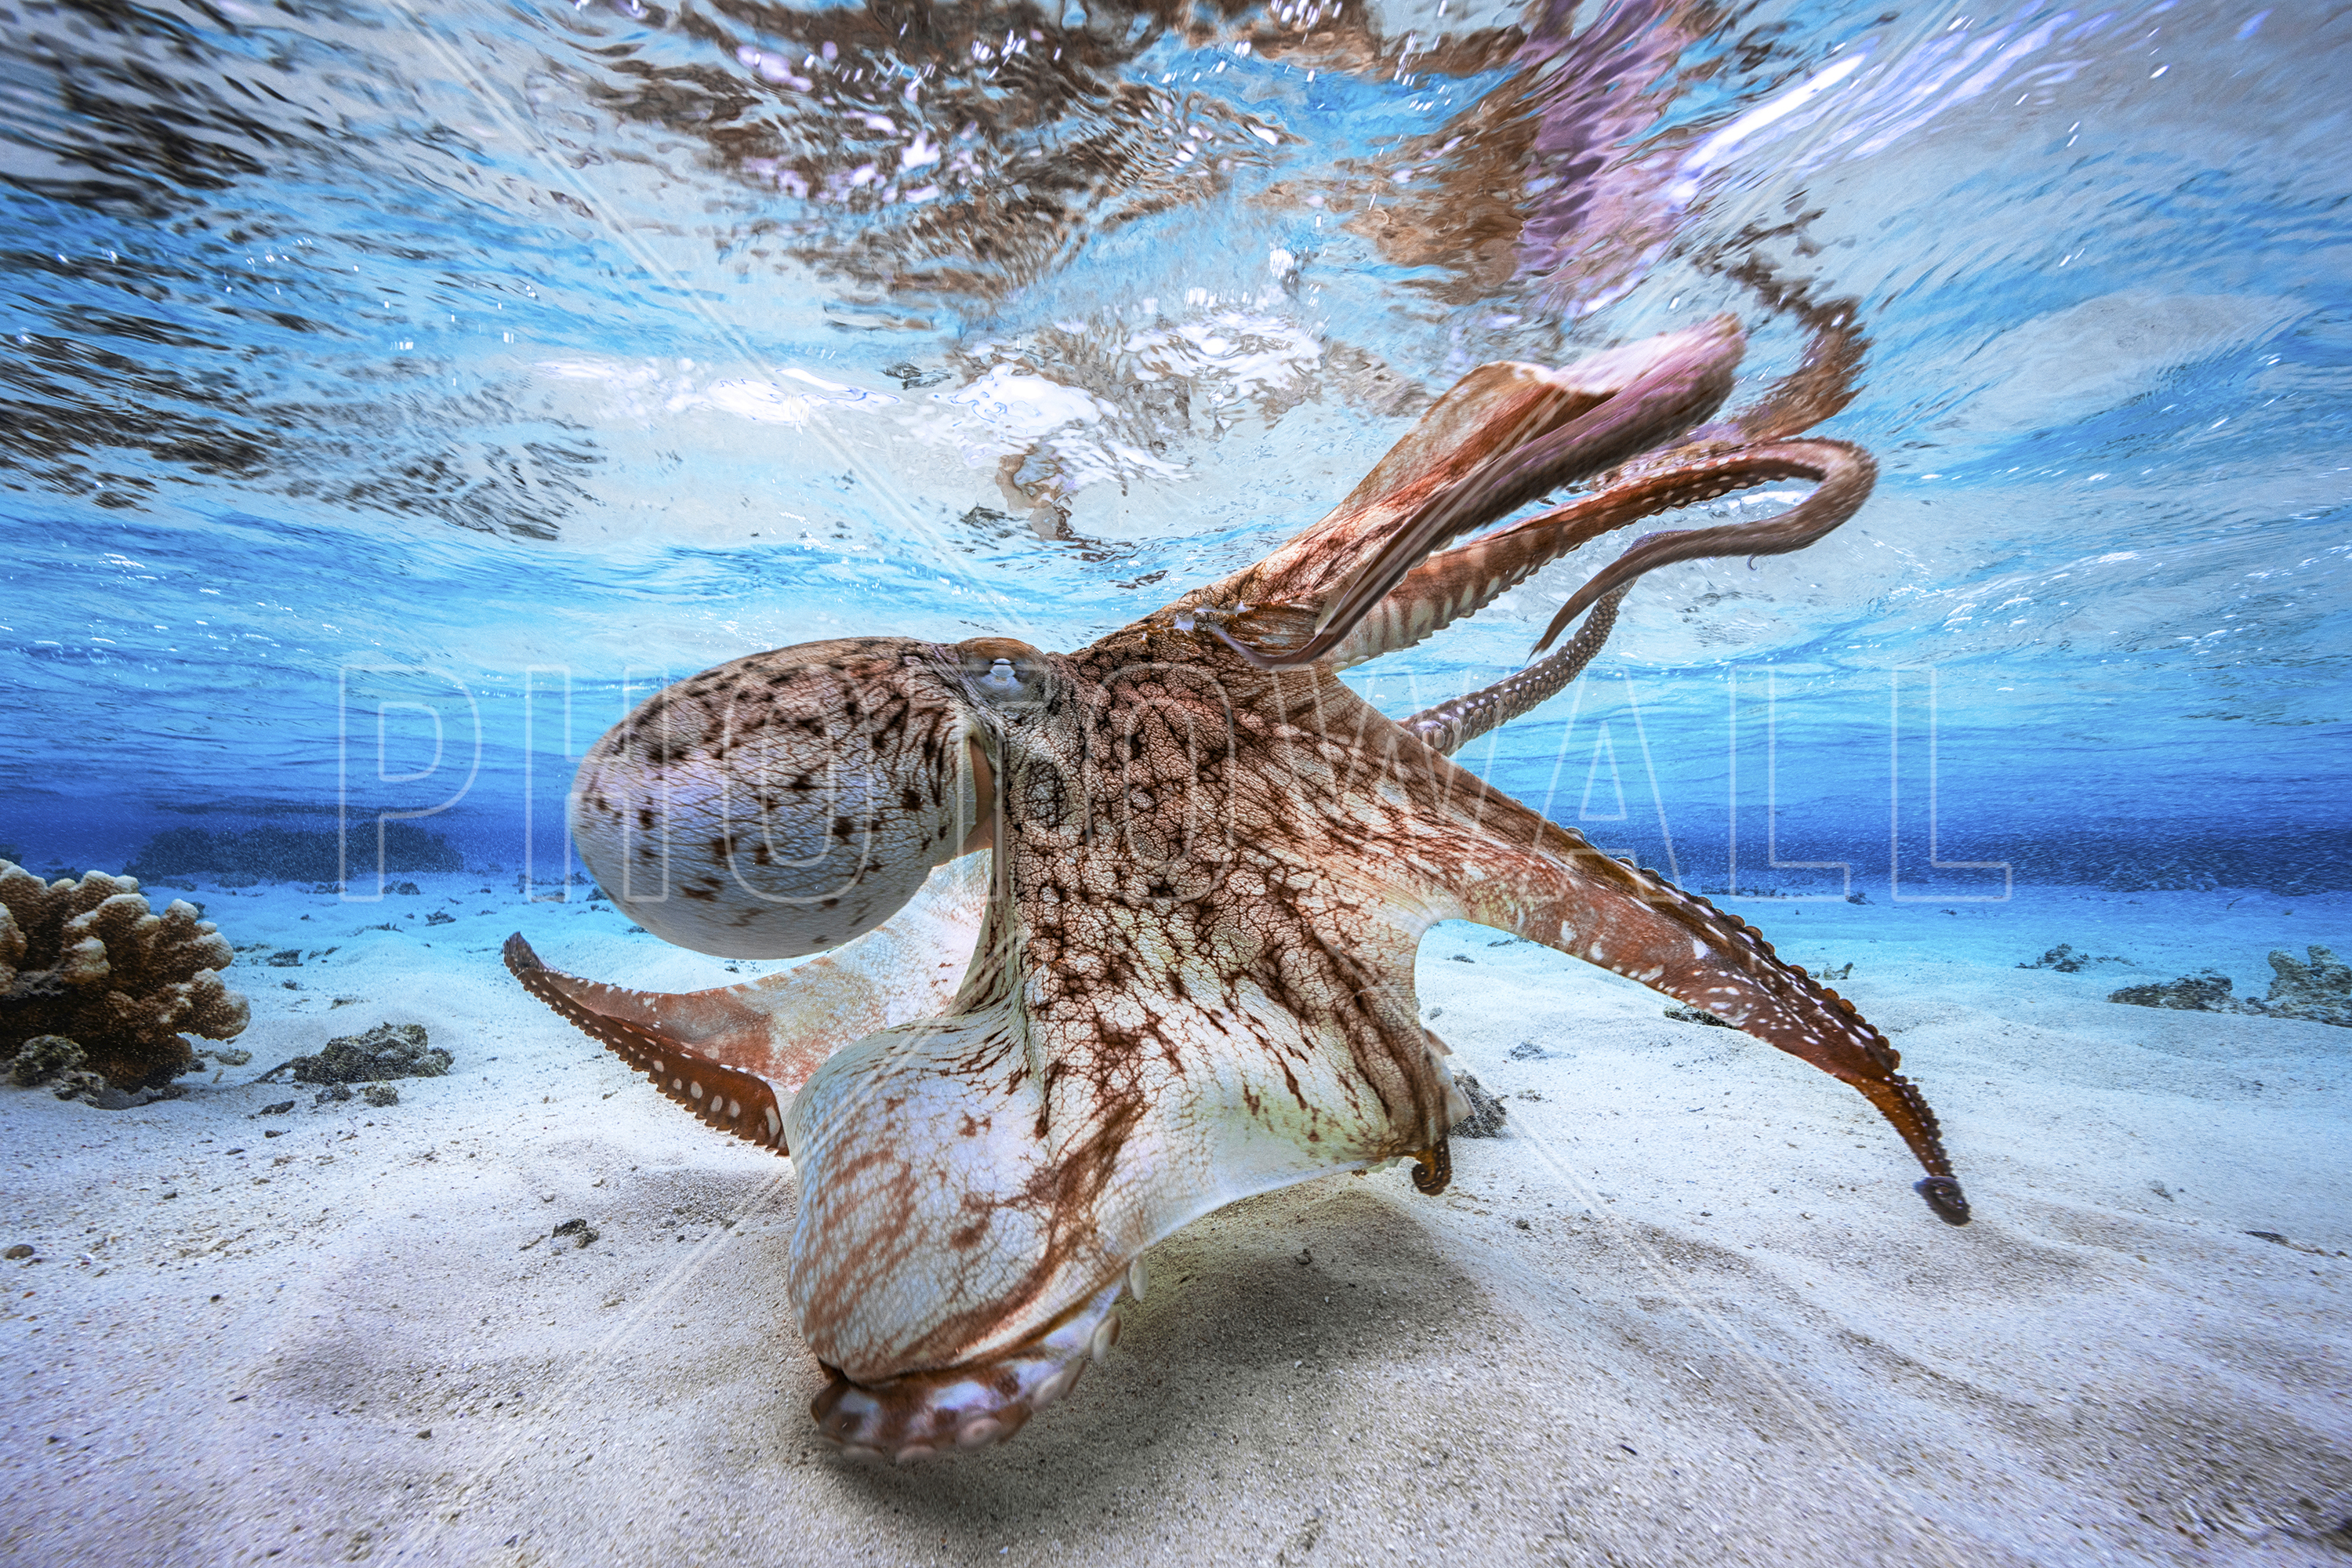 Dancing Octopus - Wallpaper - Nat Geo Underwater Photography , HD Wallpaper & Backgrounds